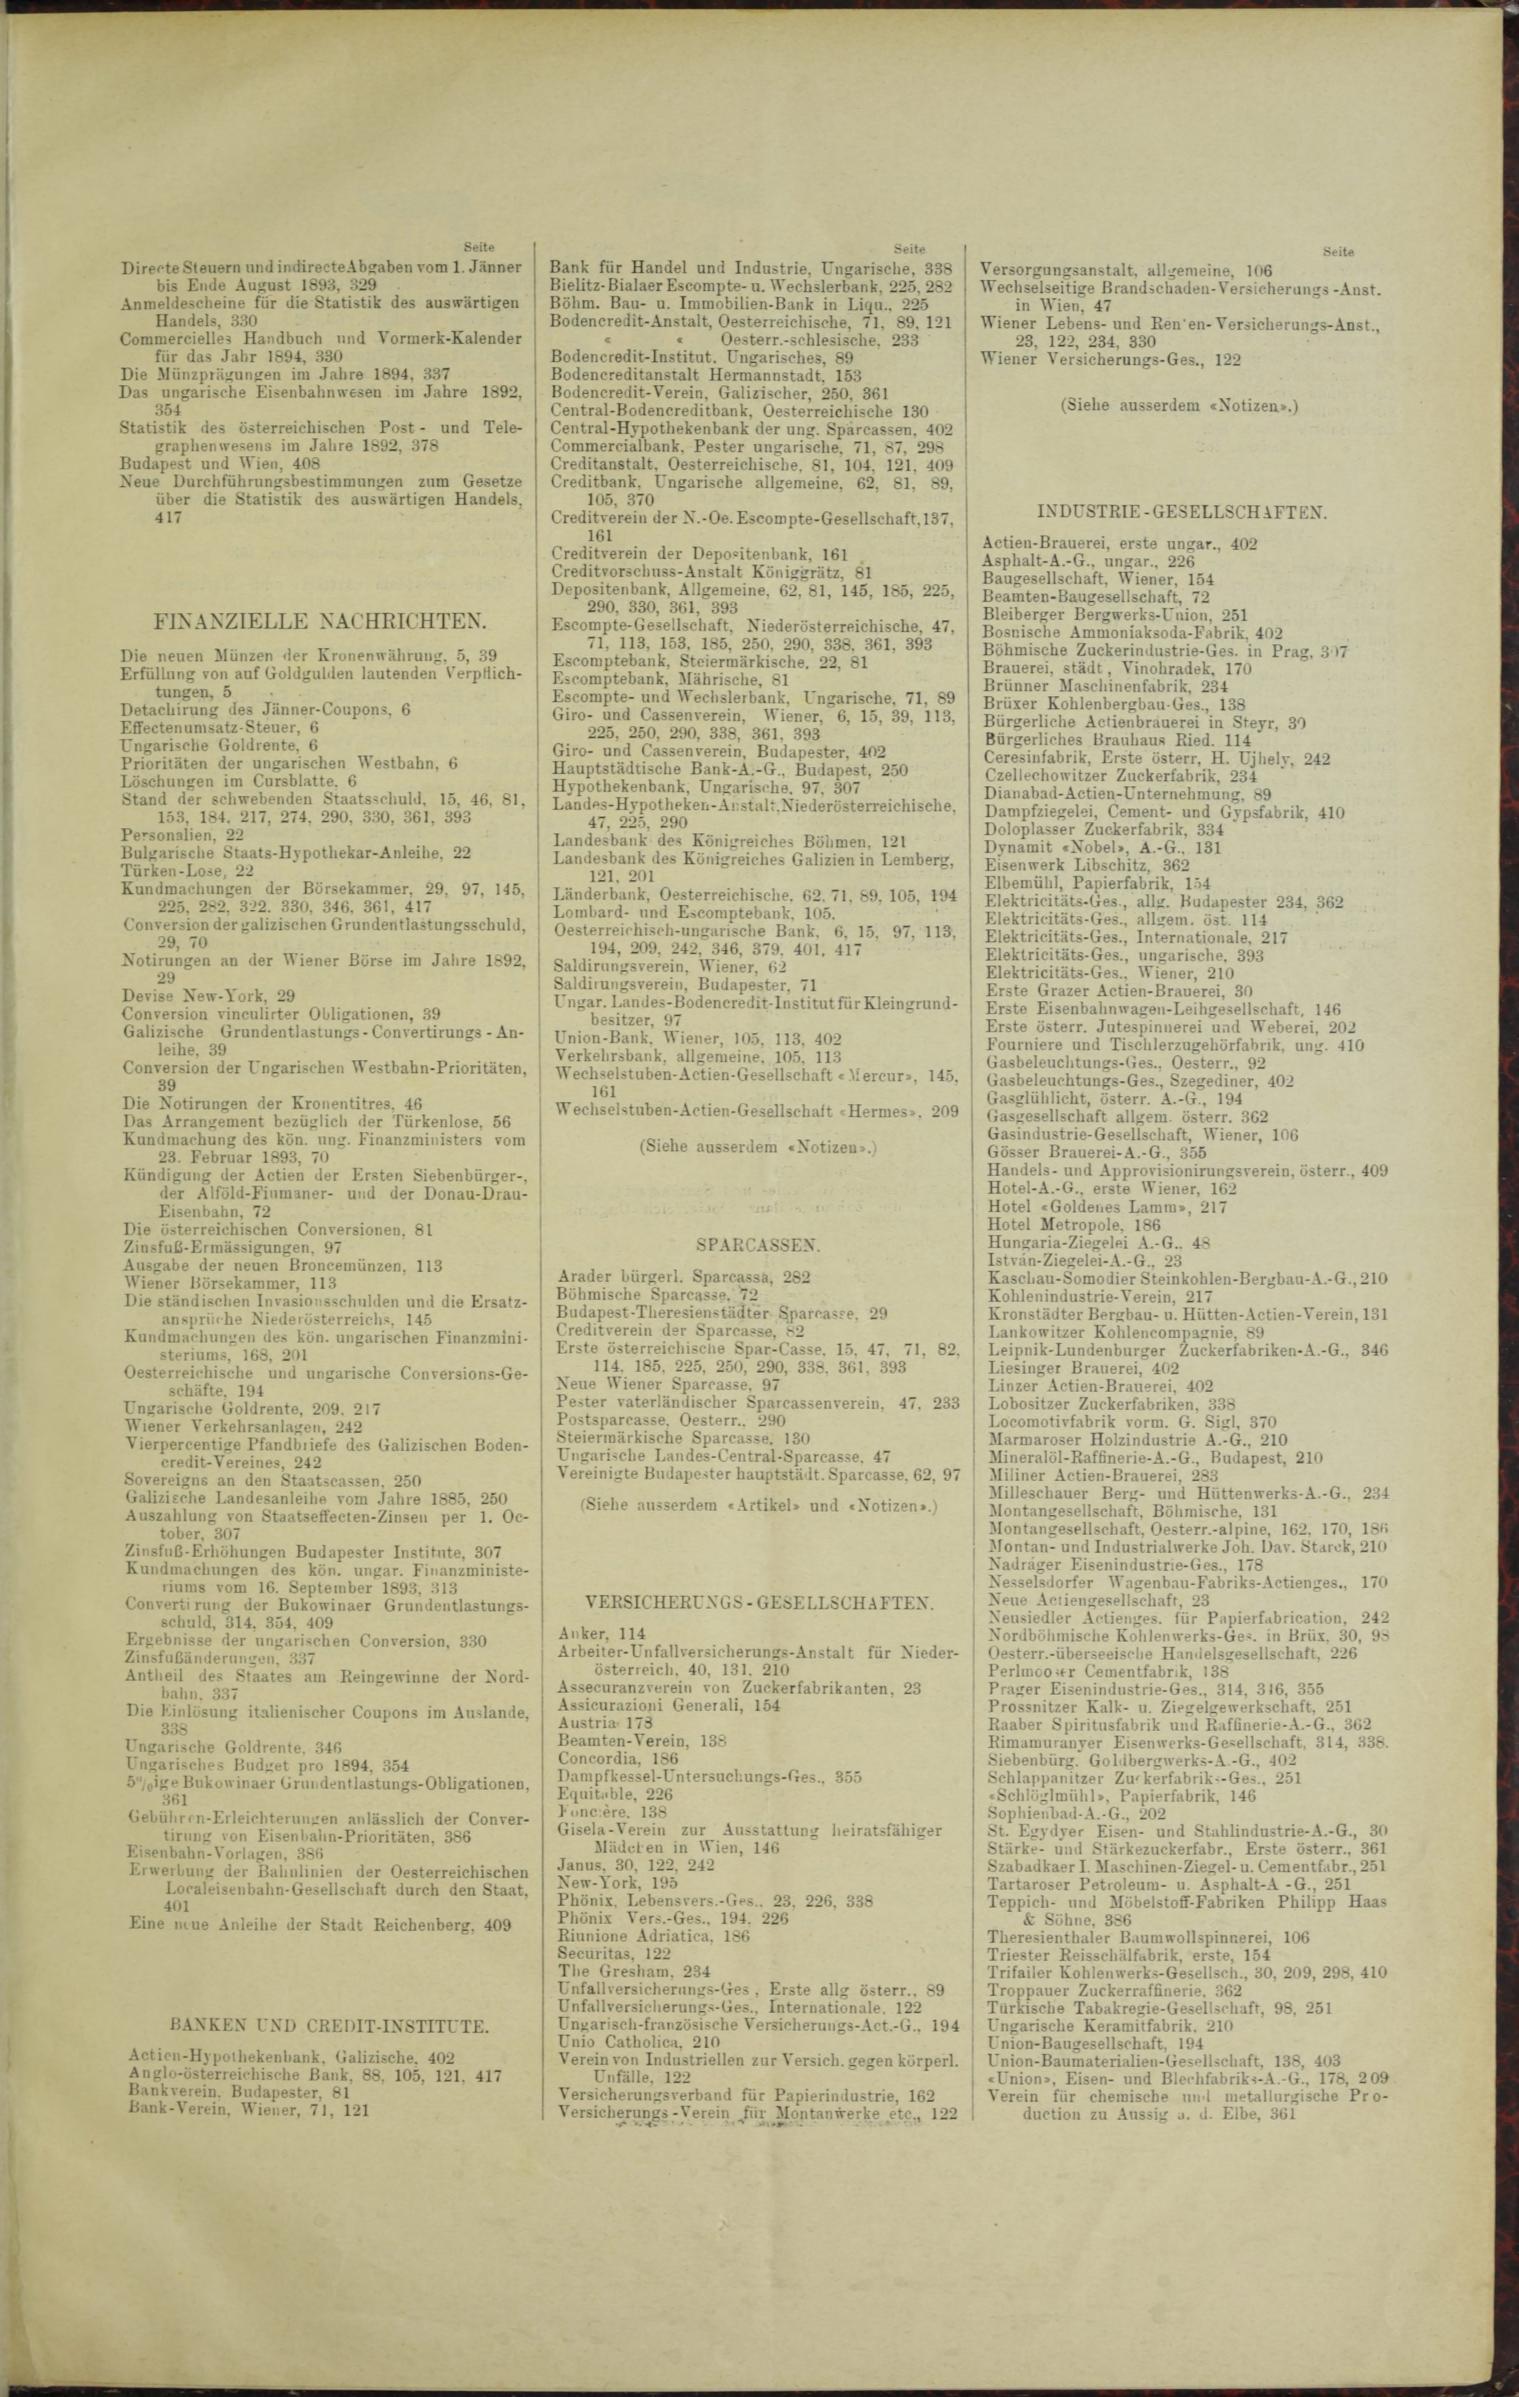 Der Tresor 30.03.1893 - Seite 11